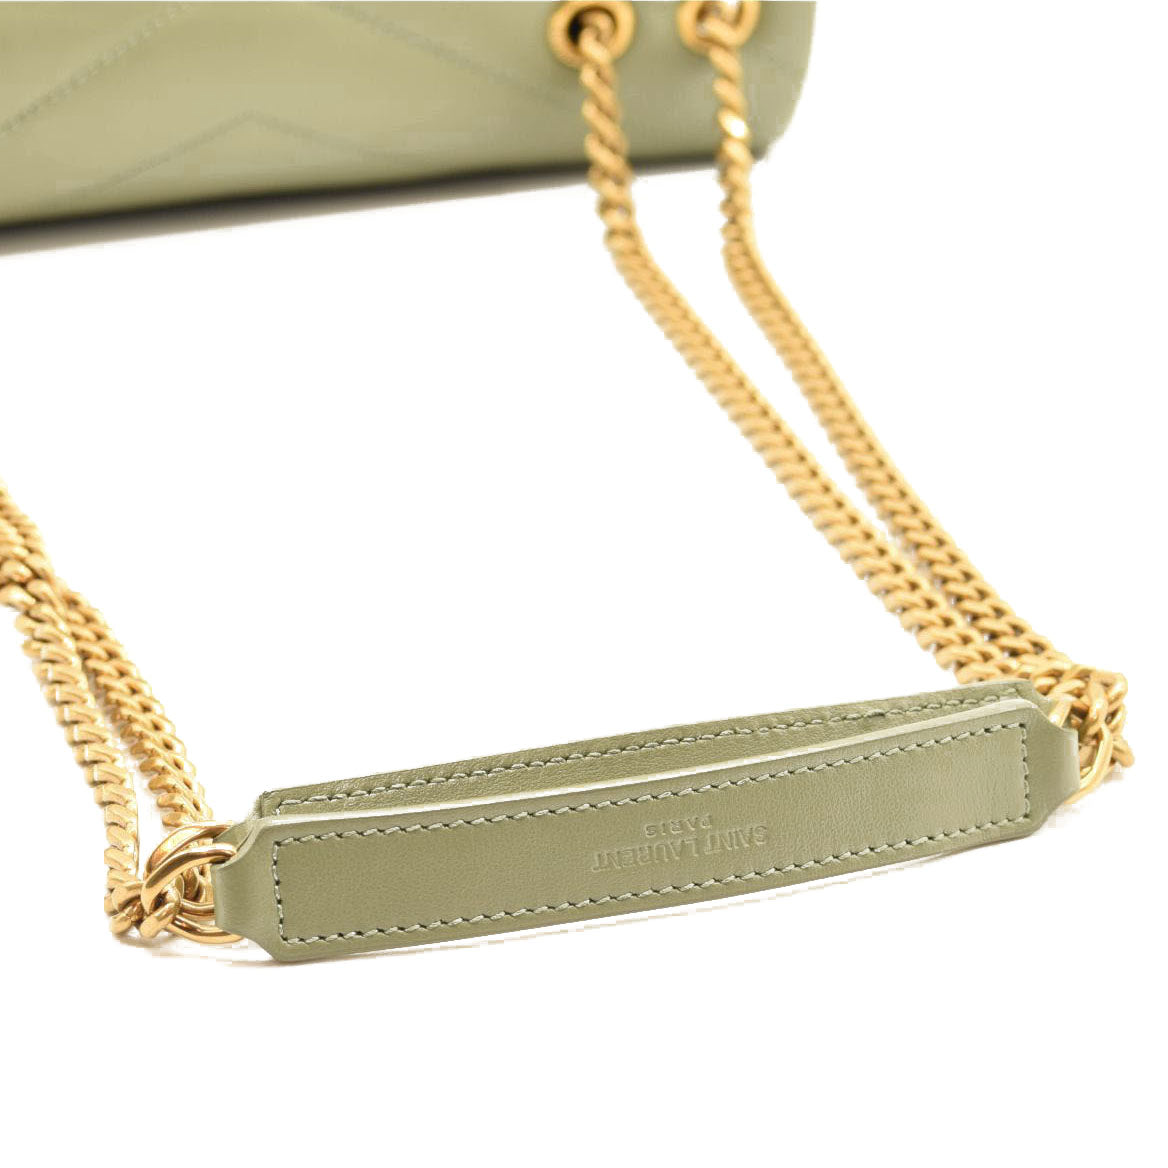 Saint Laurent Paris Gold Textured Monogram Leather Chain Clutch